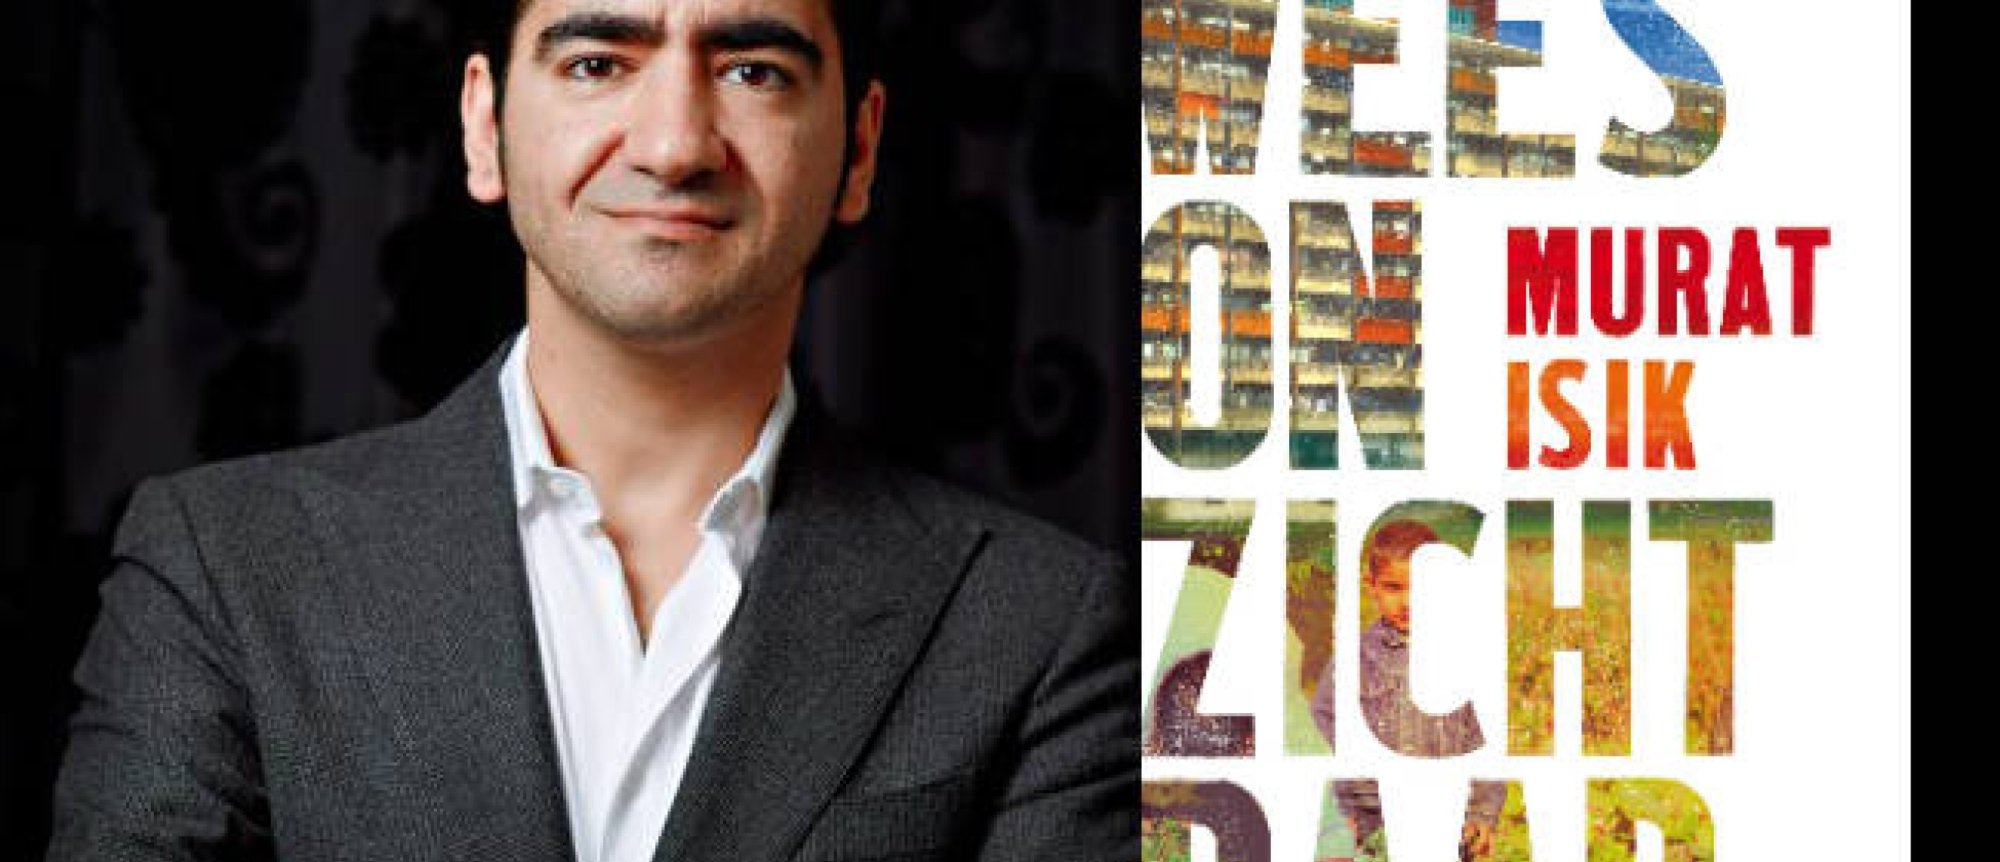 Murat Isik wint Boekhandelsprijs 2018